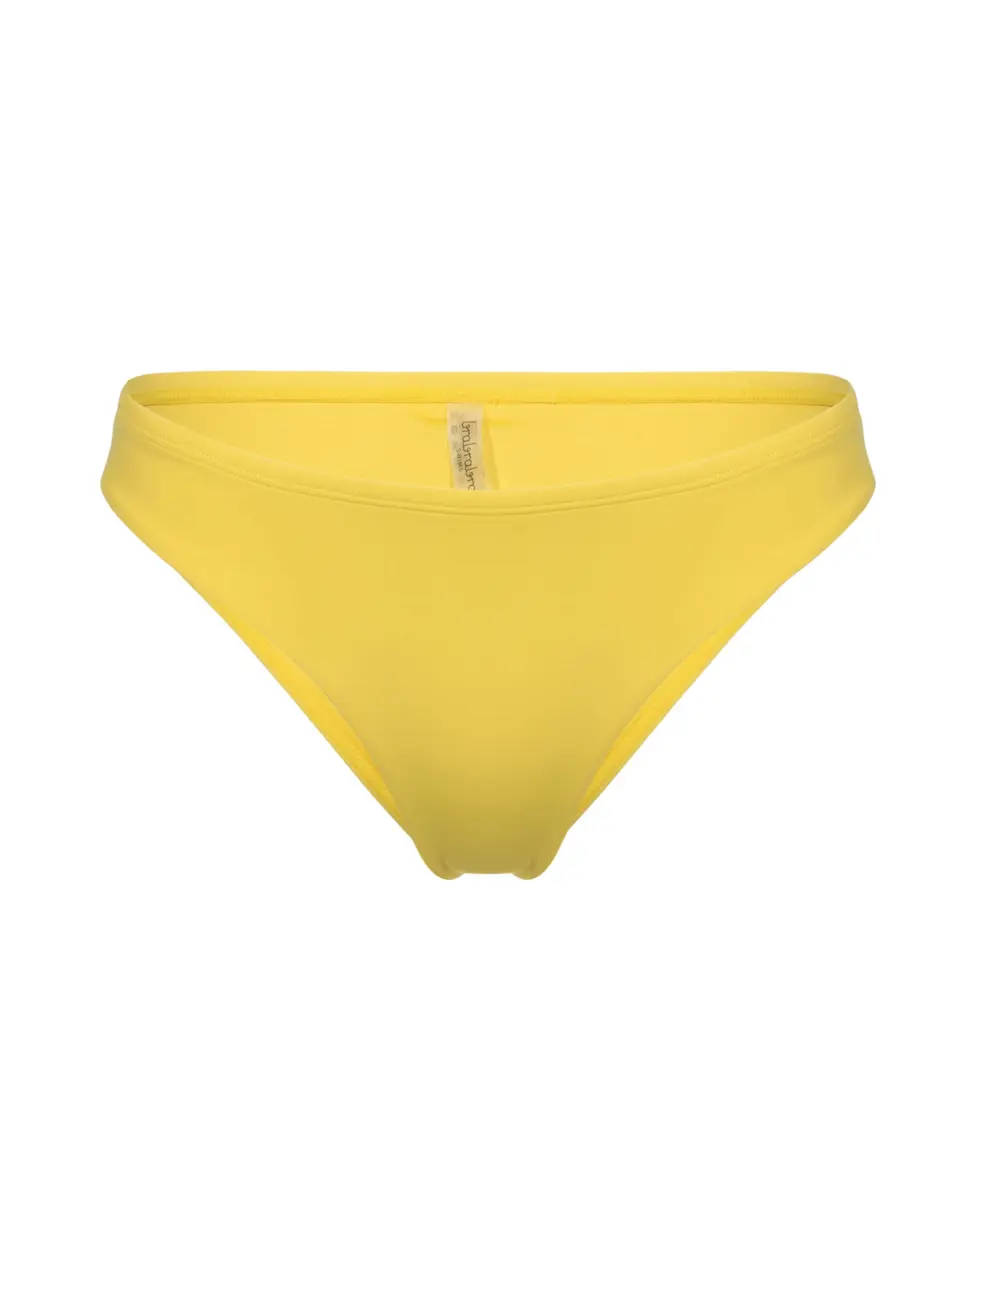 Majtki kąpielowe brazyliany 027SM żółte